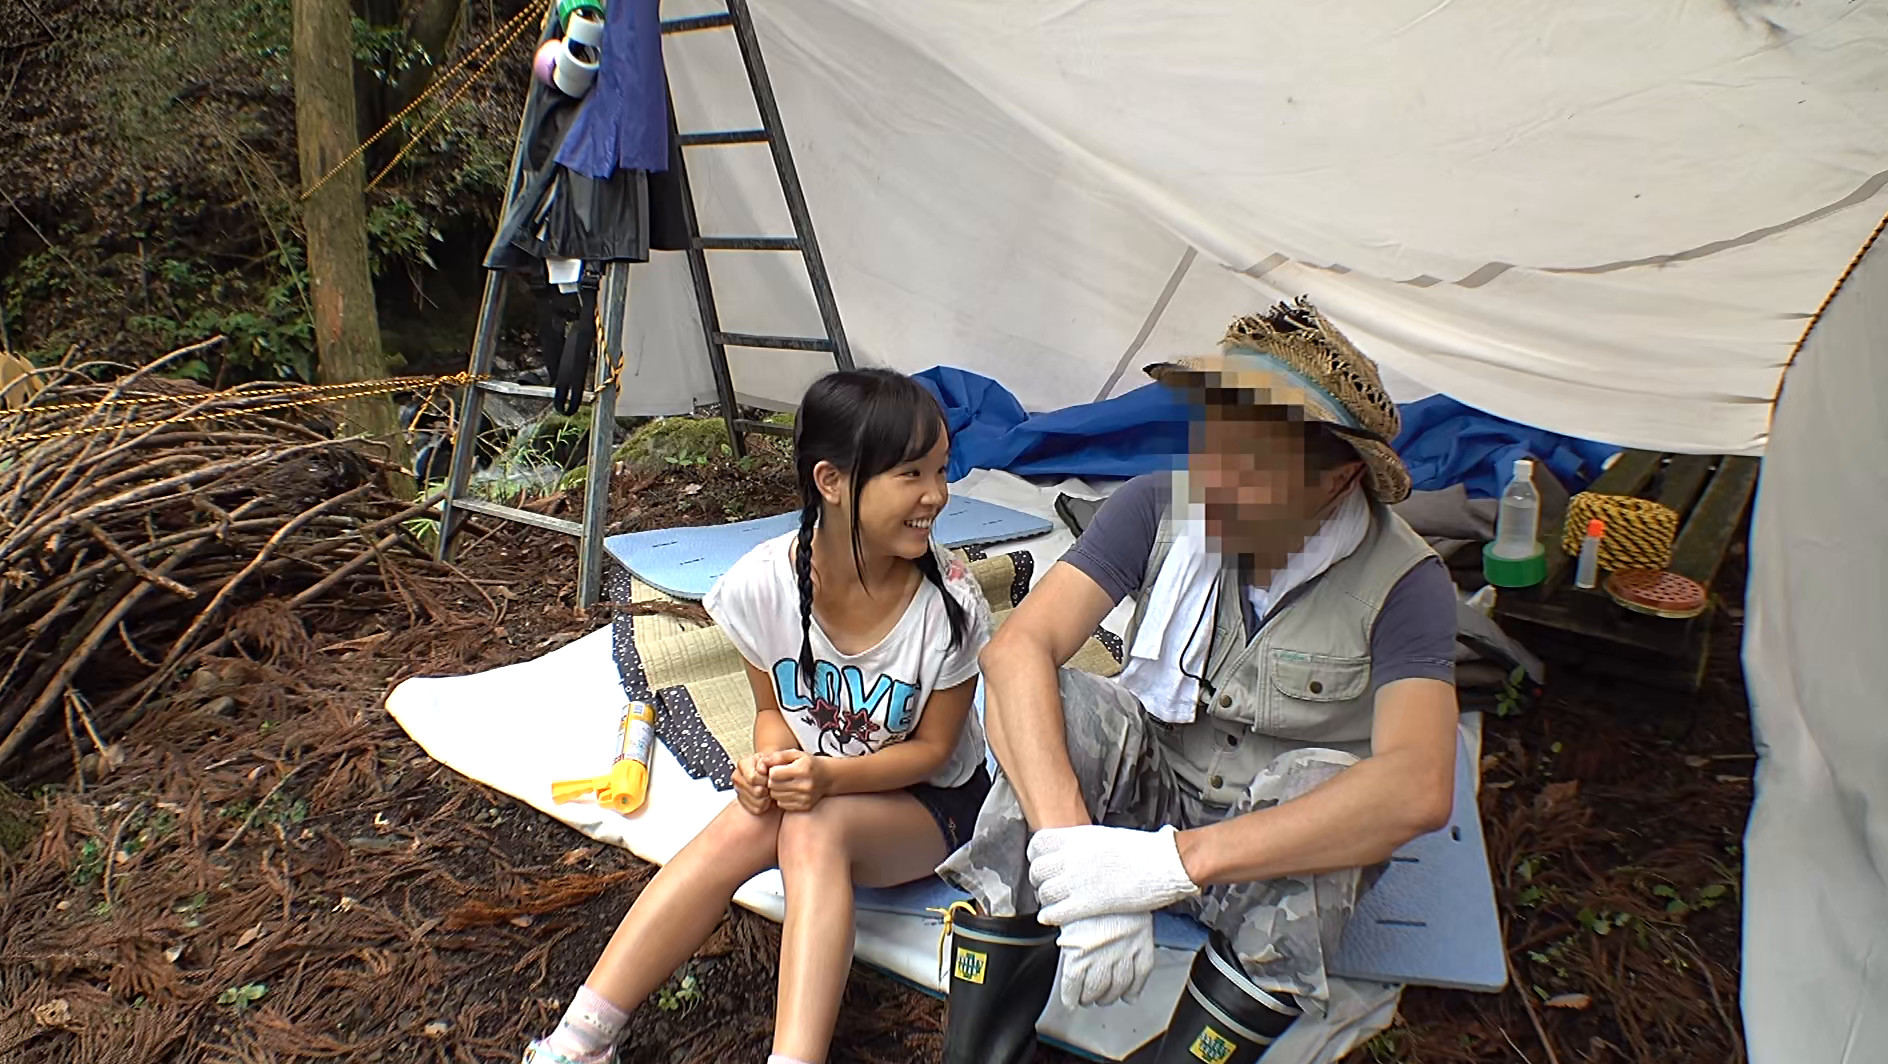 夏休みキャンプ場管理人による日焼け美少女野外わいせつ映像